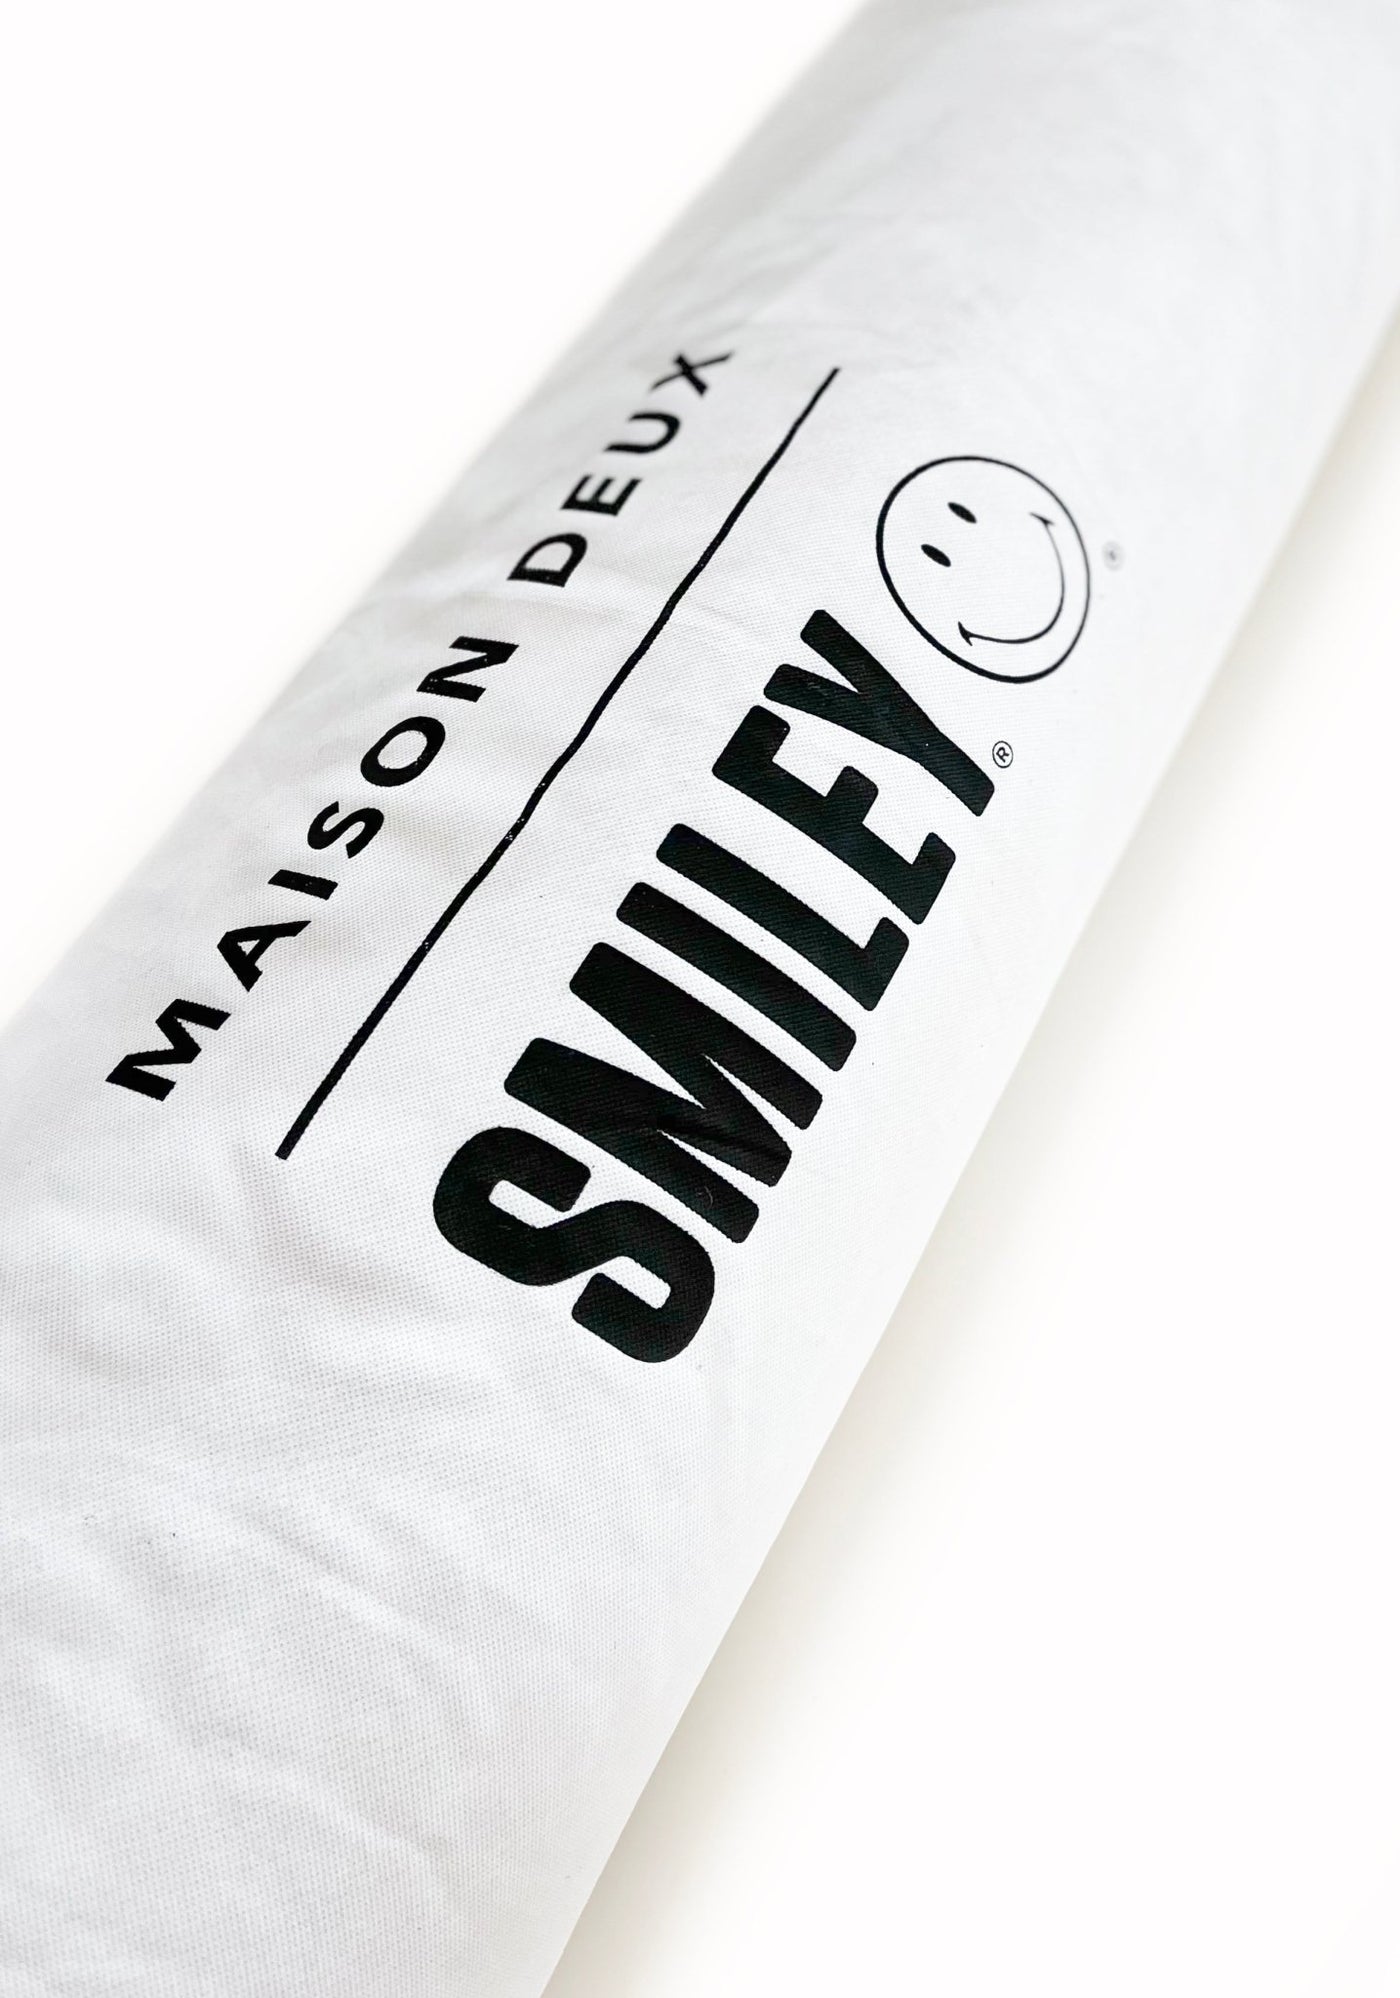 Smiley® Teppich aus 100% neuseeländischer Wolle ca. 180x150cm - Bitangel RENOVATE & FURNISH HOMES GmbH